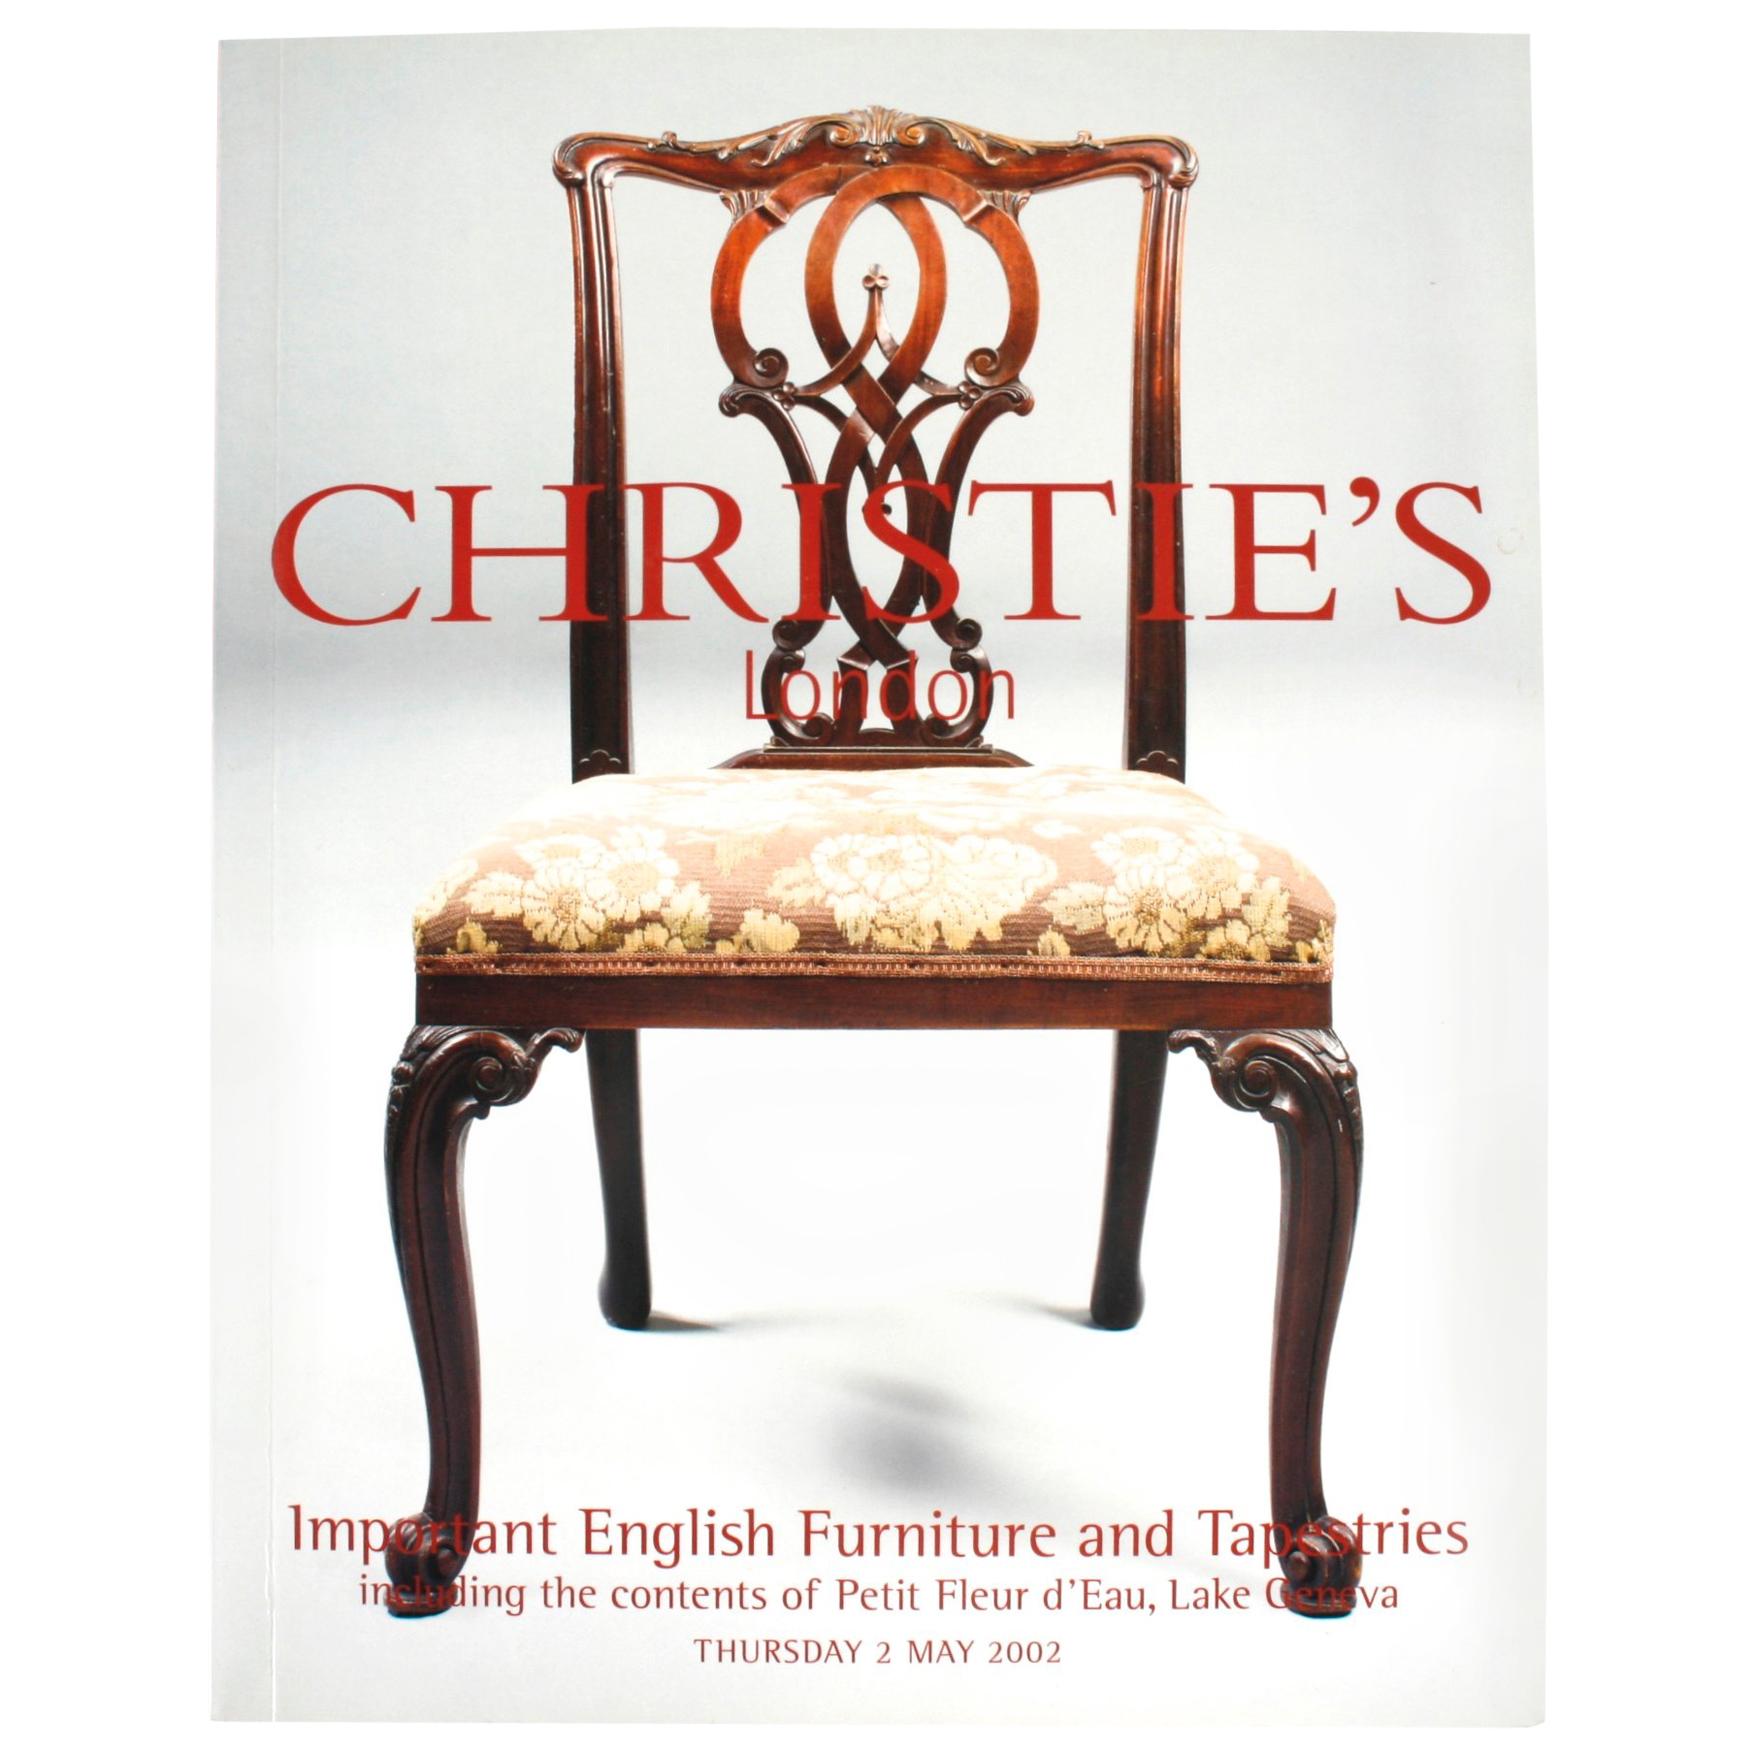 Christie's, wichtige englische Möbel und Wandteppiche, Inhalt Petit Fleur d'Eau